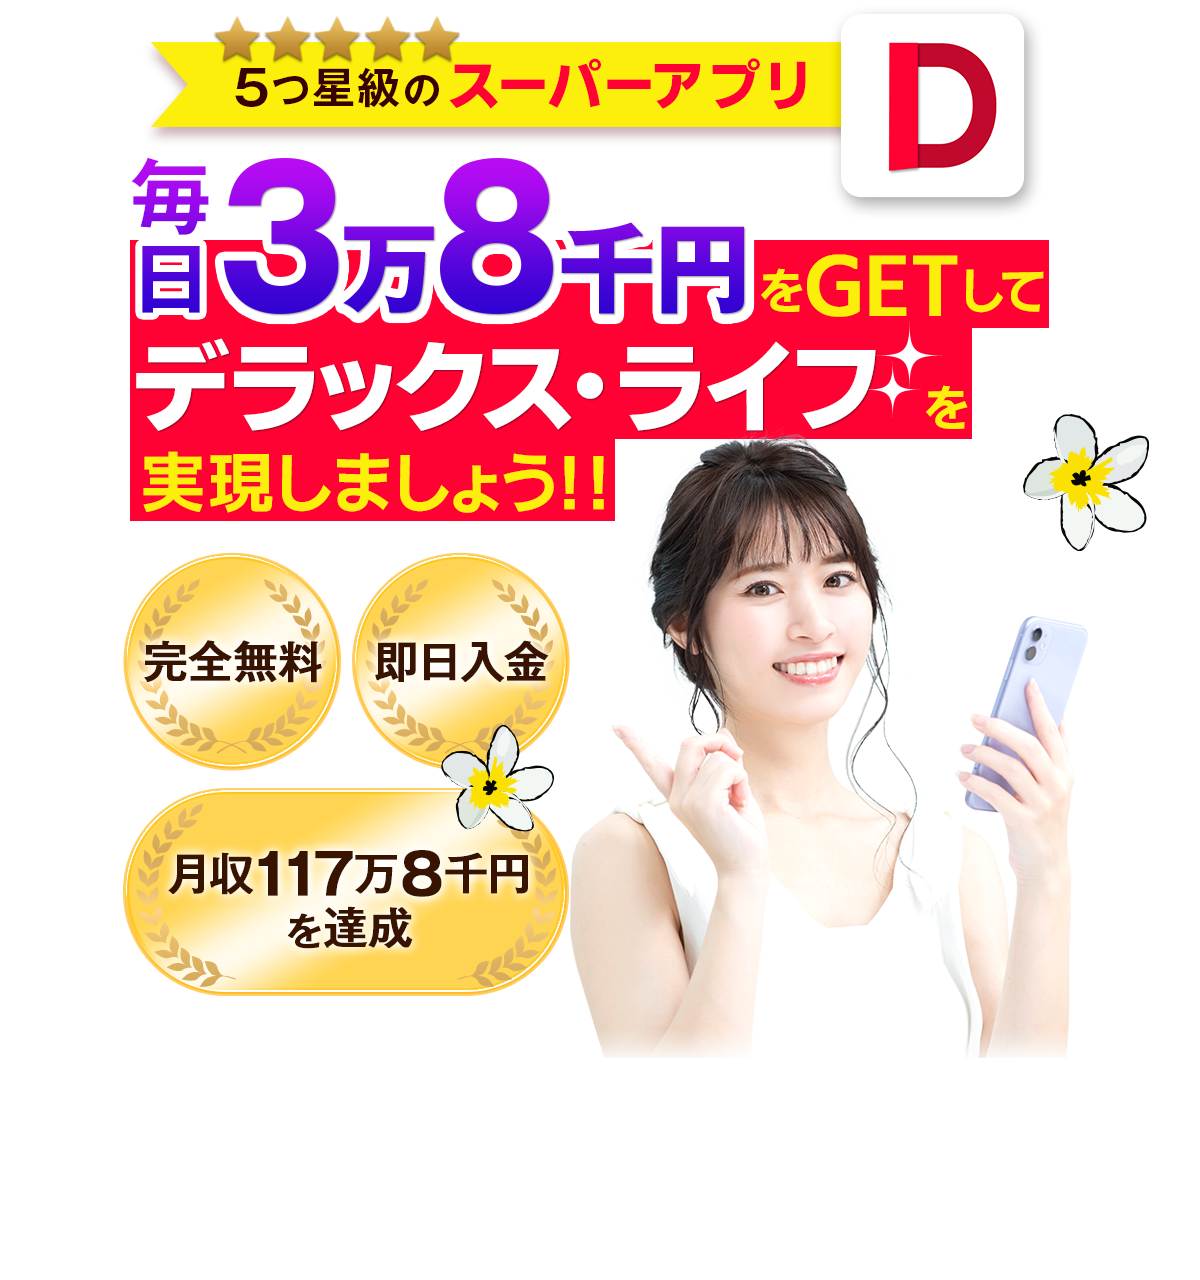 ５つ星級のスーパーアプリ！毎日3万8千円をGETしてデラックス・ライフを実現しよう！